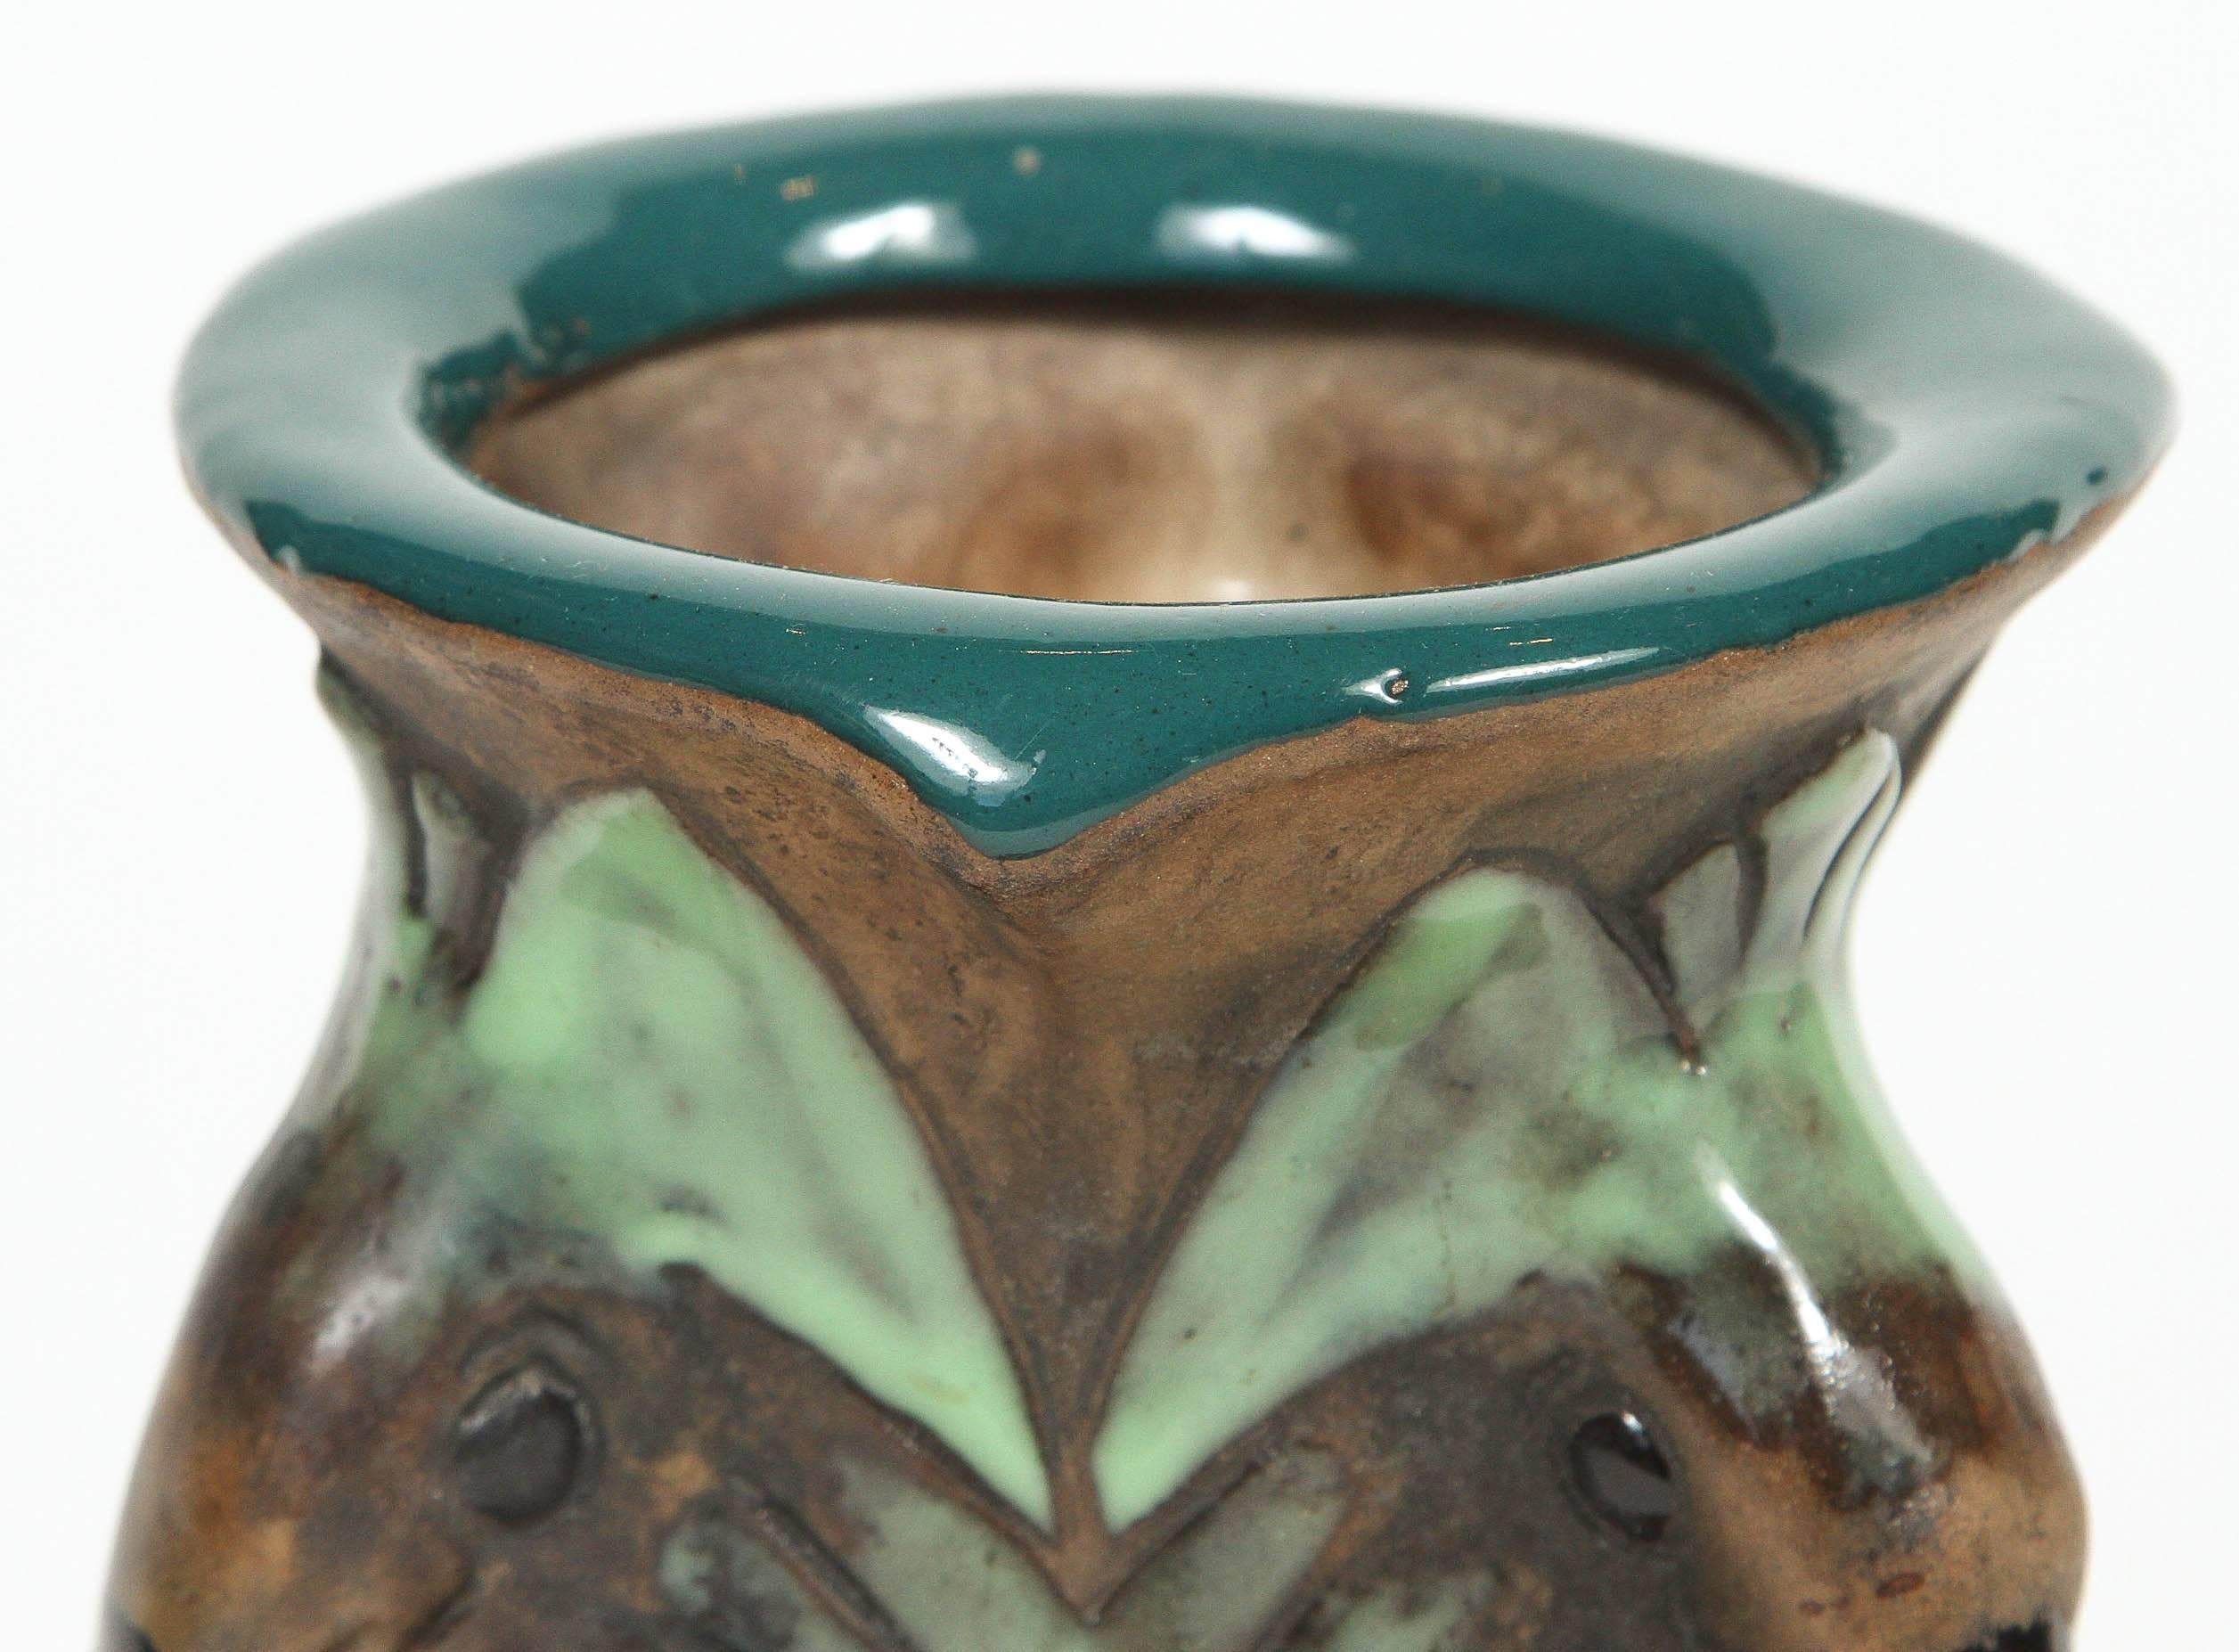 Antique Amphora pottery Art Nouveau vase with bird handles. Color glaze on matte finish, circa 1890-1910.